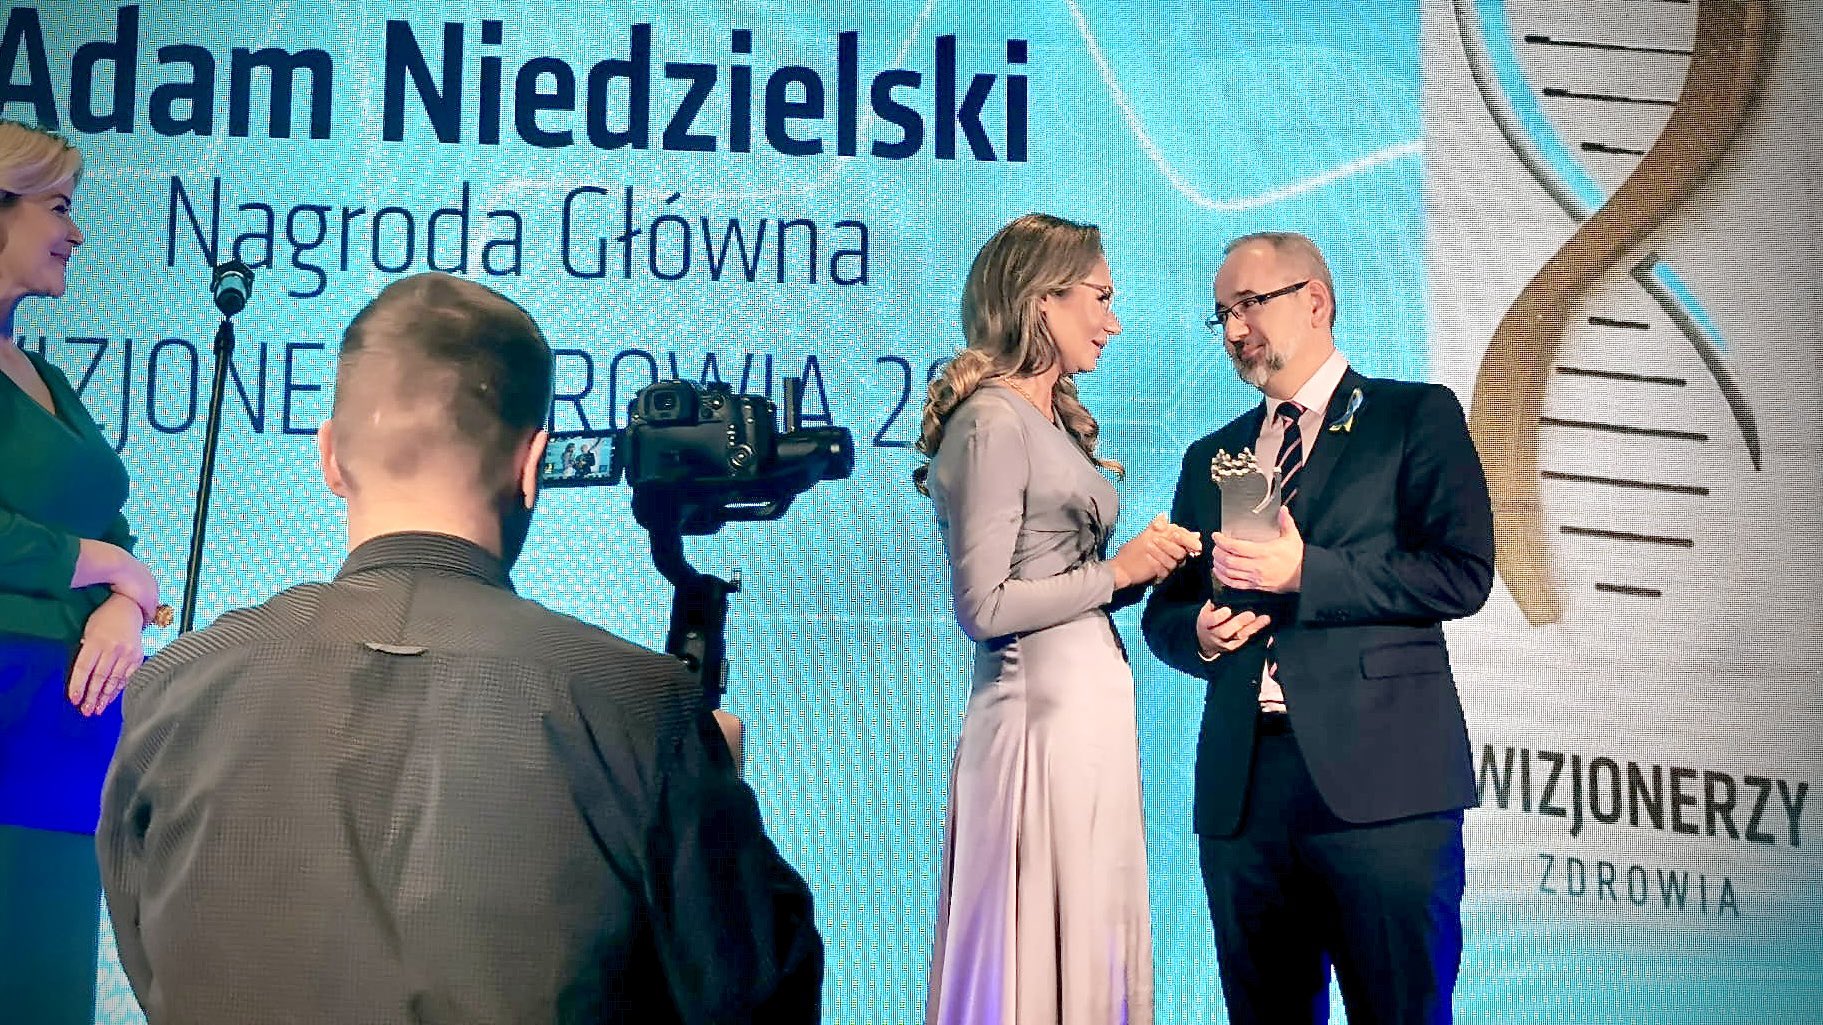 propolski.pl: Adam Niedzielski chwali się nagrodą